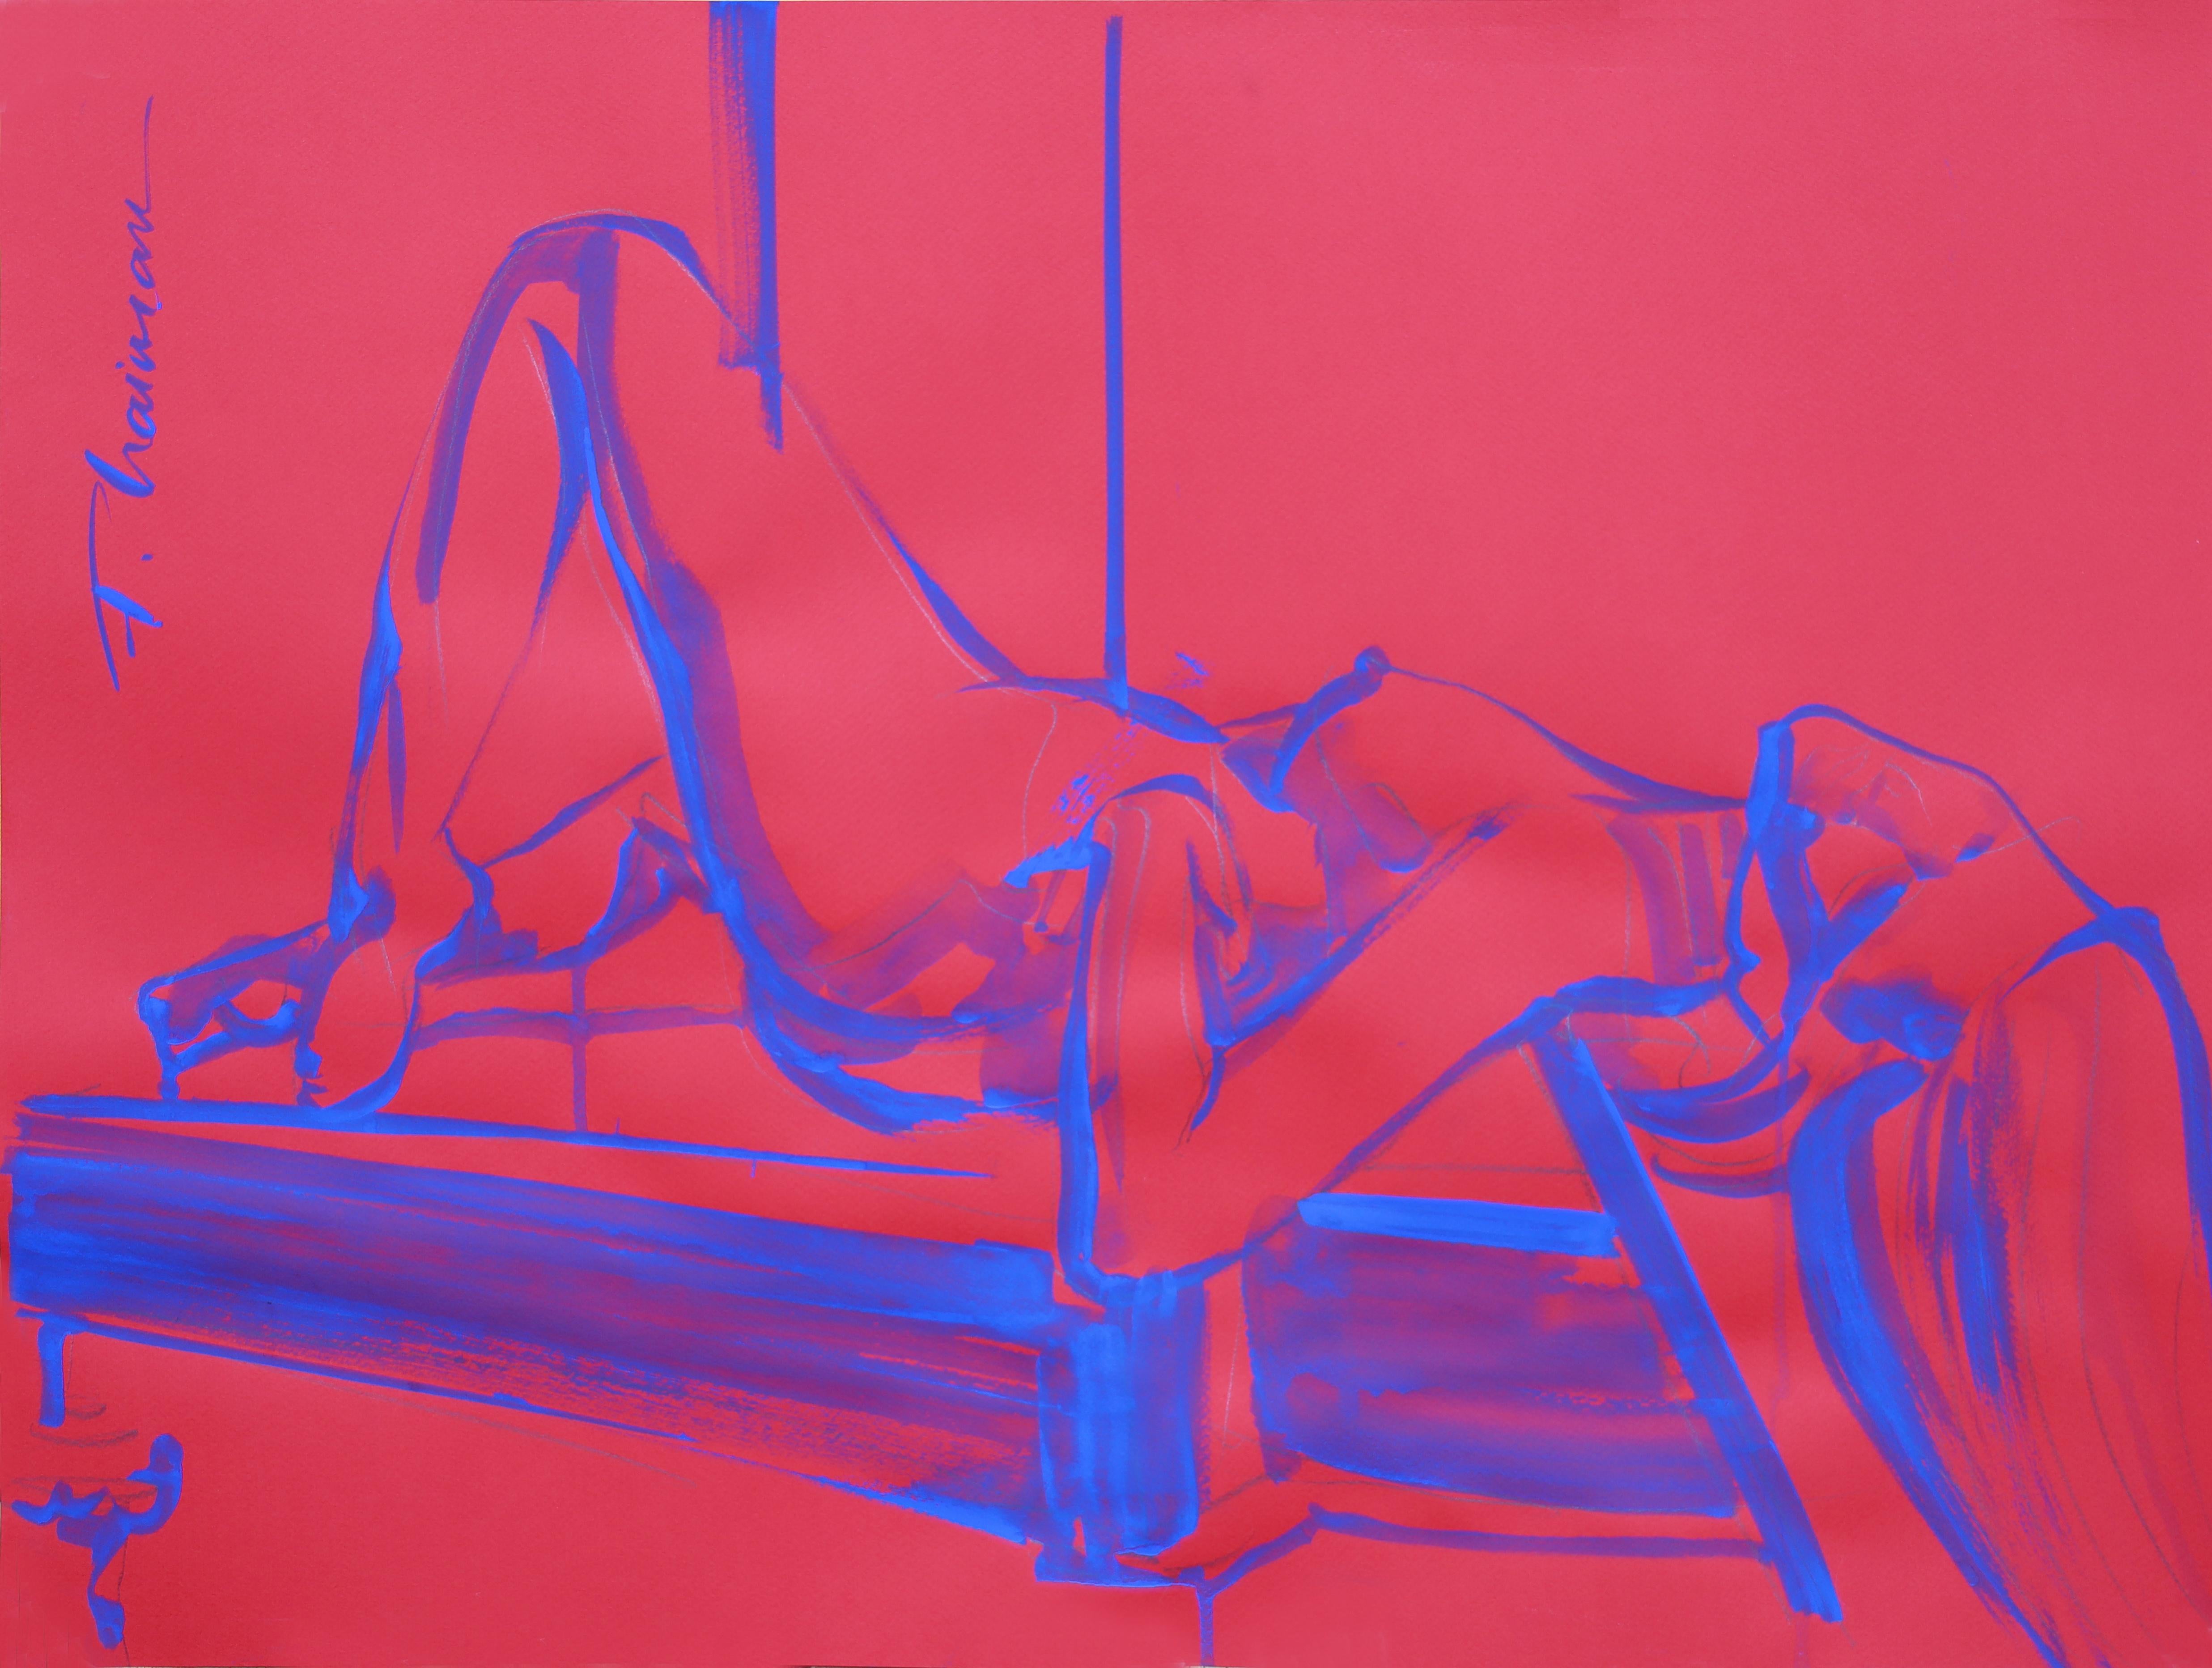 "Bienheureux" 

Fait partie de la série "Nude in Interior".
Œuvre originale sur papier coloré, à la détrempe bleu outremer sur papier coloré rouge, inspirée par Matisse.  
Taille 2 : 7.5x19.5in / 70x50cm . Livré roulé dans un tube.

Livraison